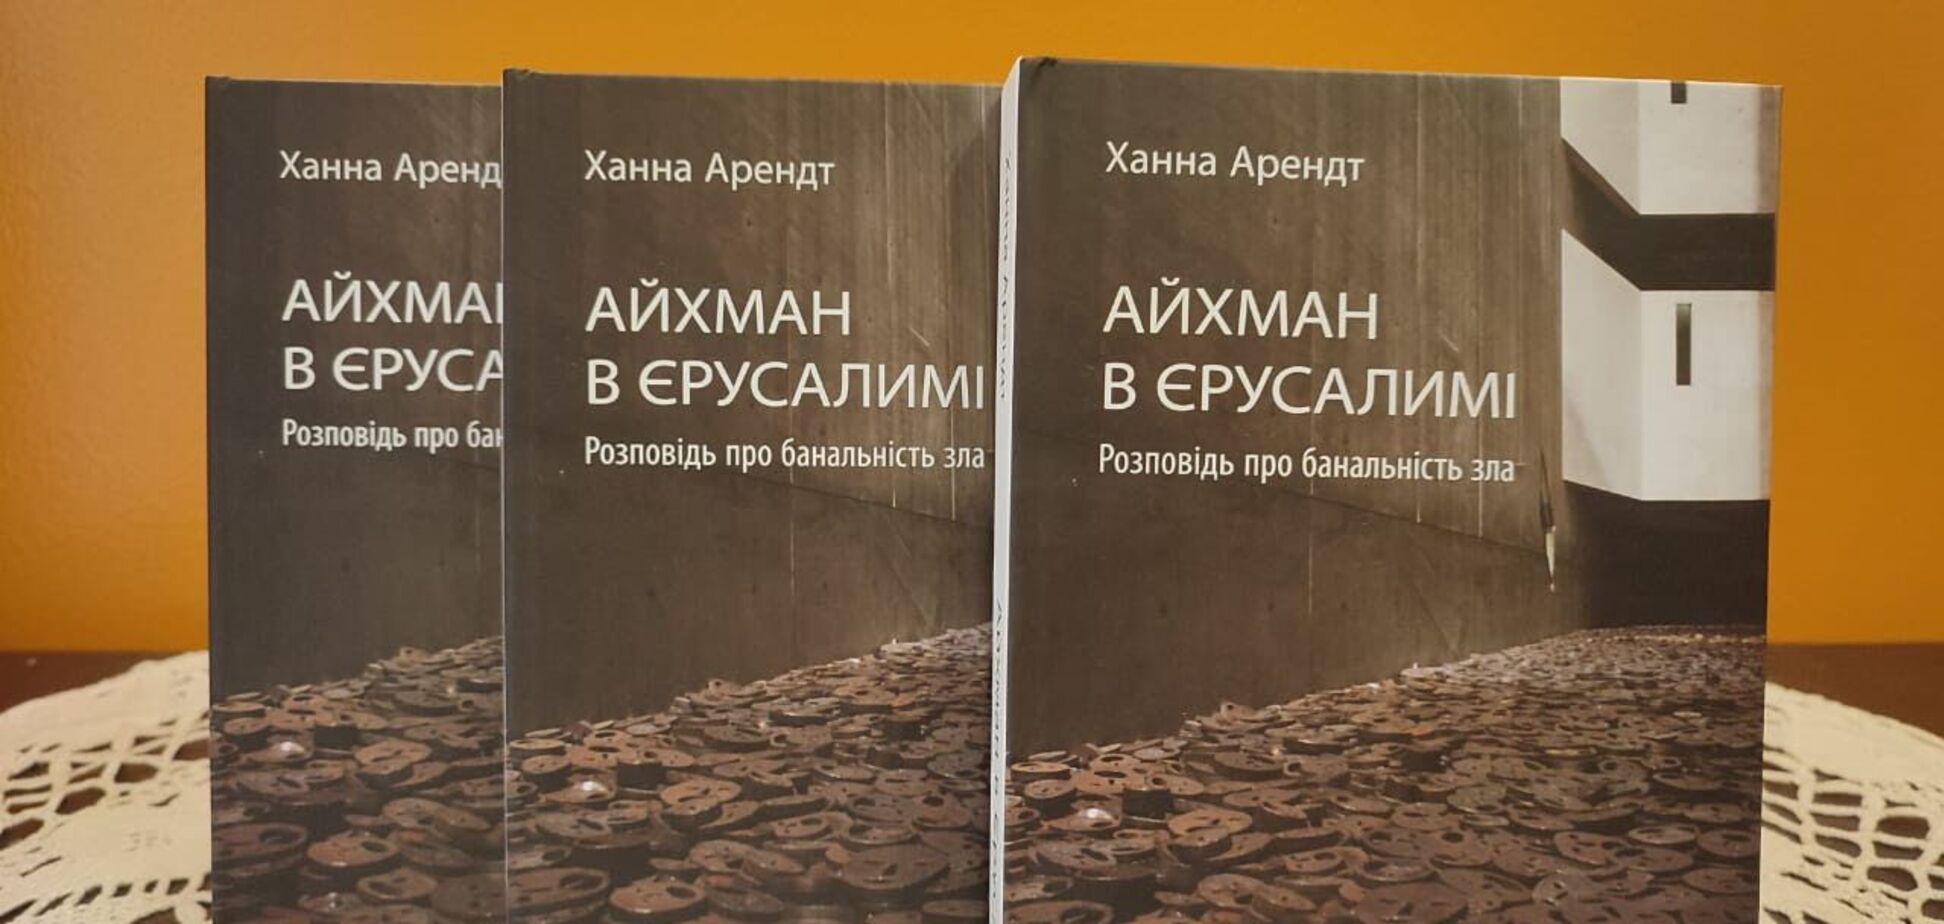 Книгу, которая повлияла на дискуссию о Холокосте, издали на украинском языке